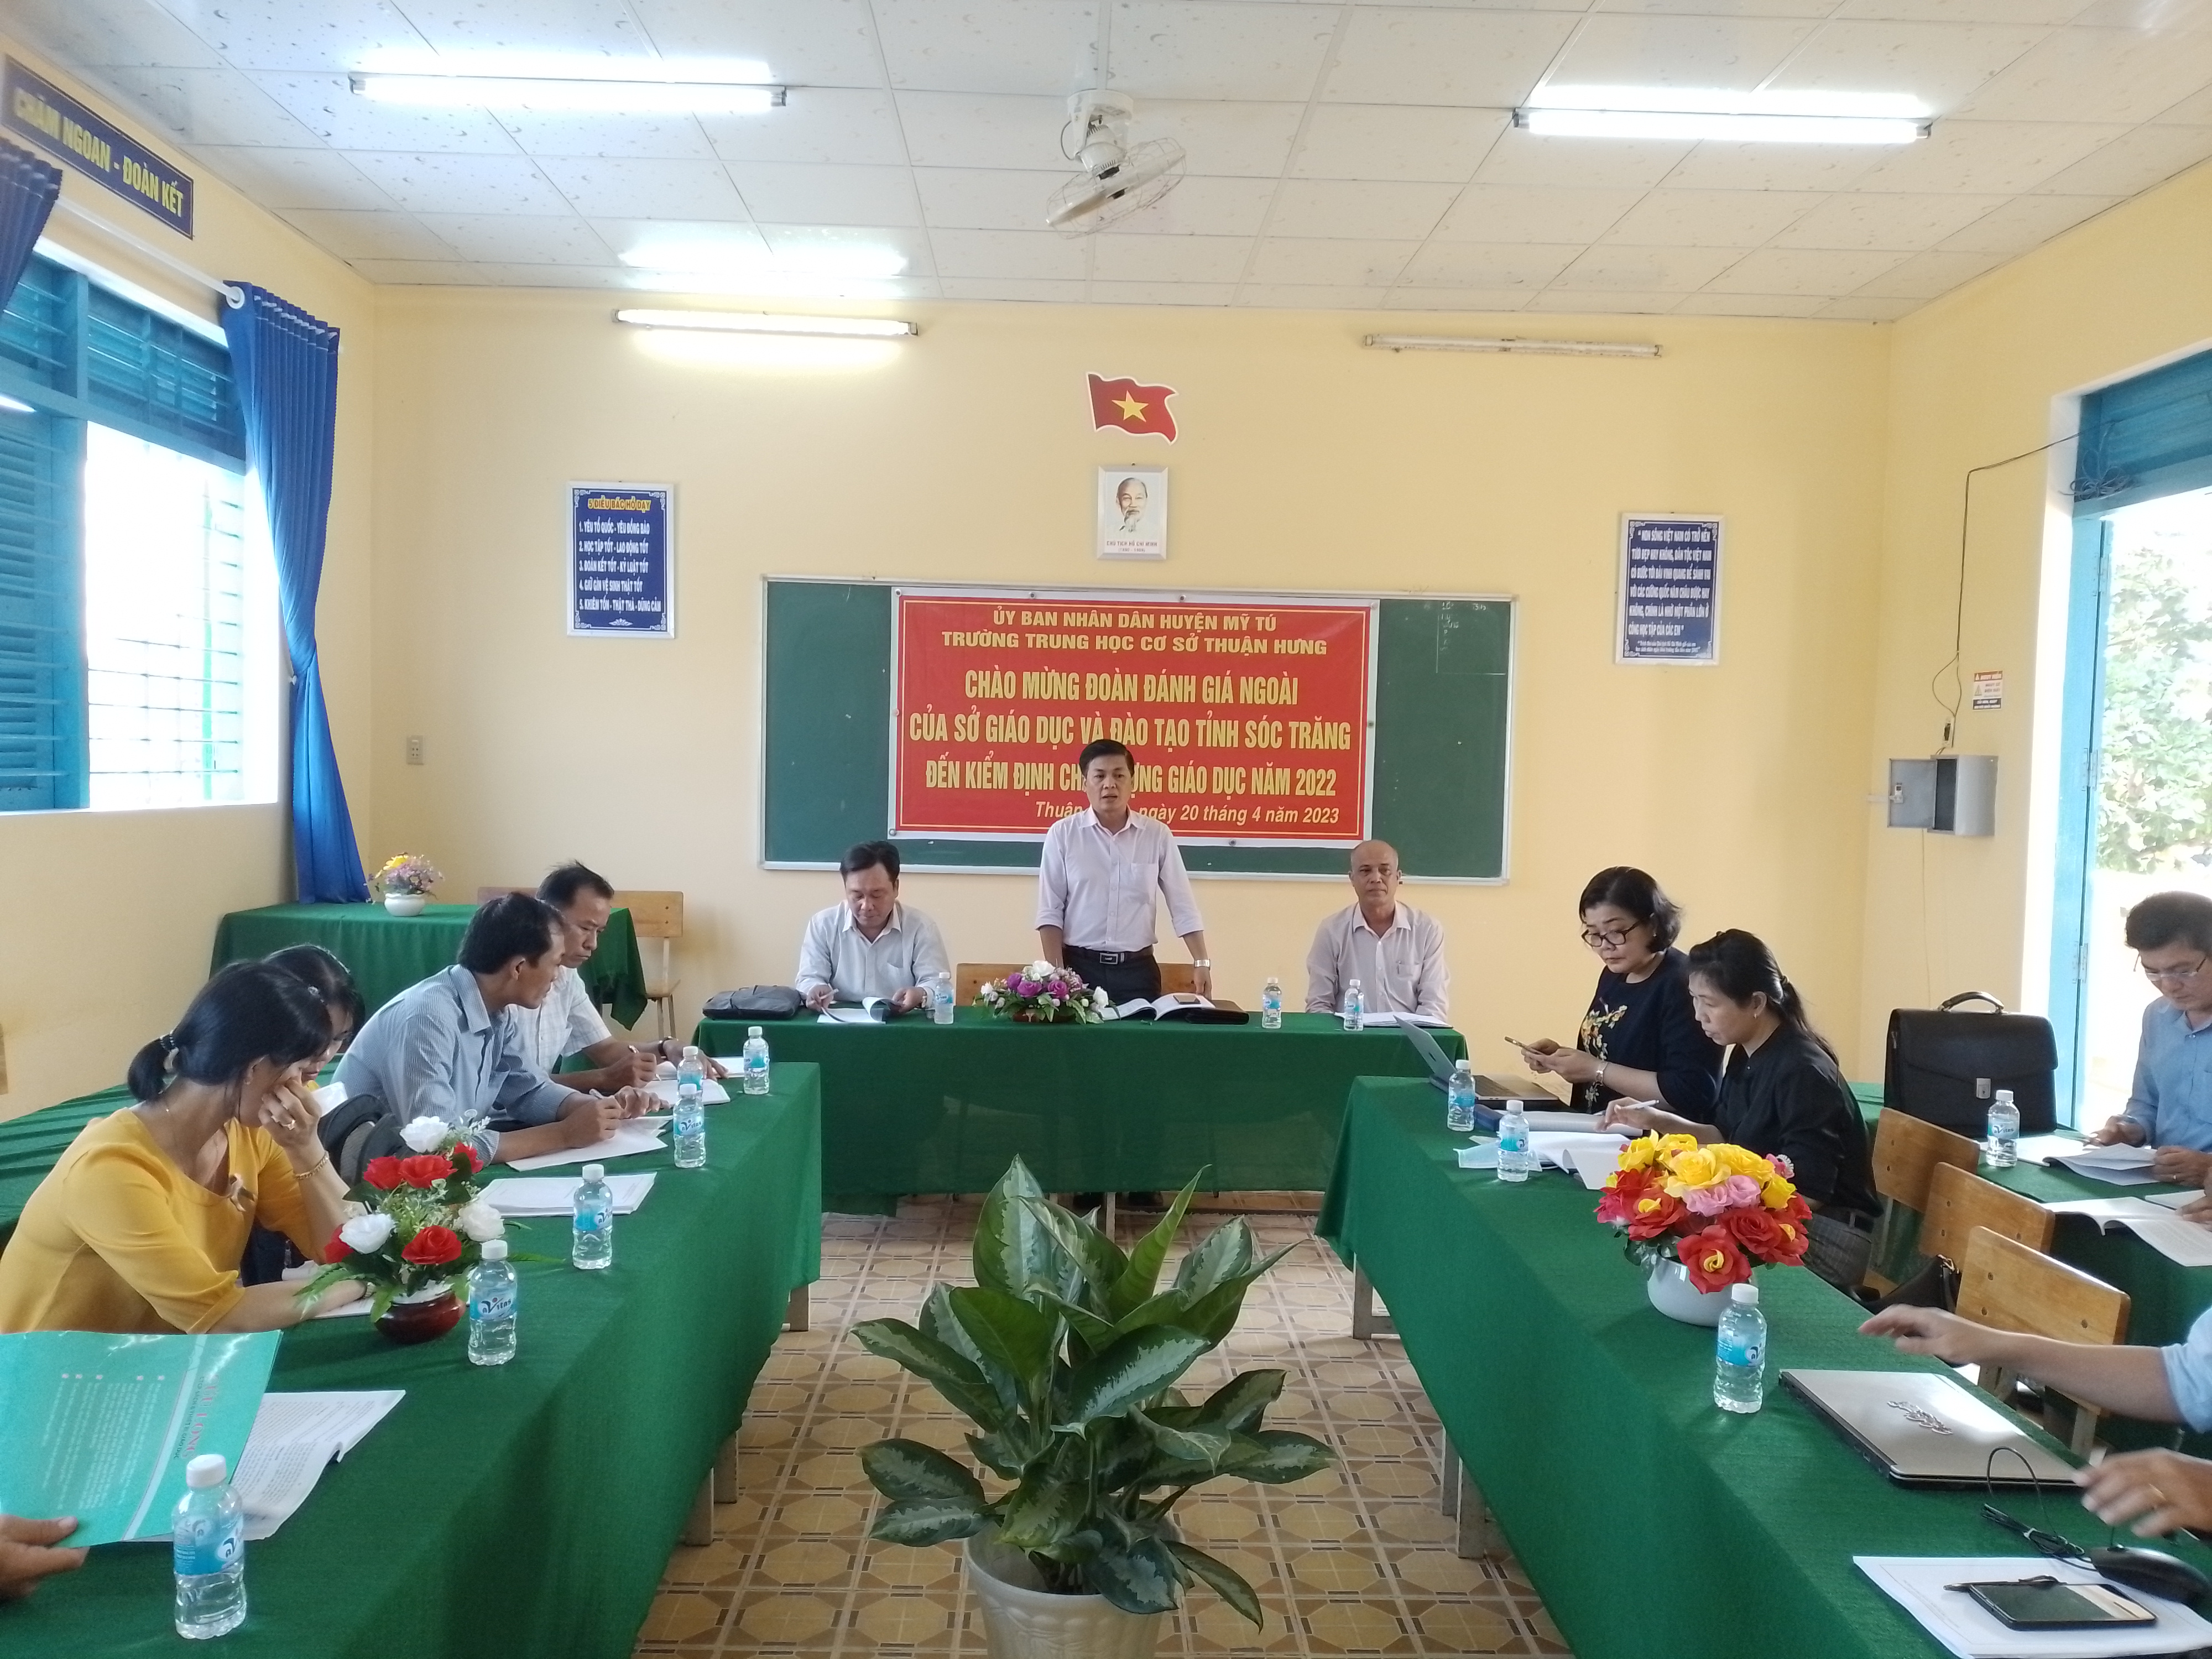 Đánh giá ngoài về công tác kiểm định chất lượng giáo dục và công nhận đạt chuẩn quốc gia Trường THCS Thuận Hưng